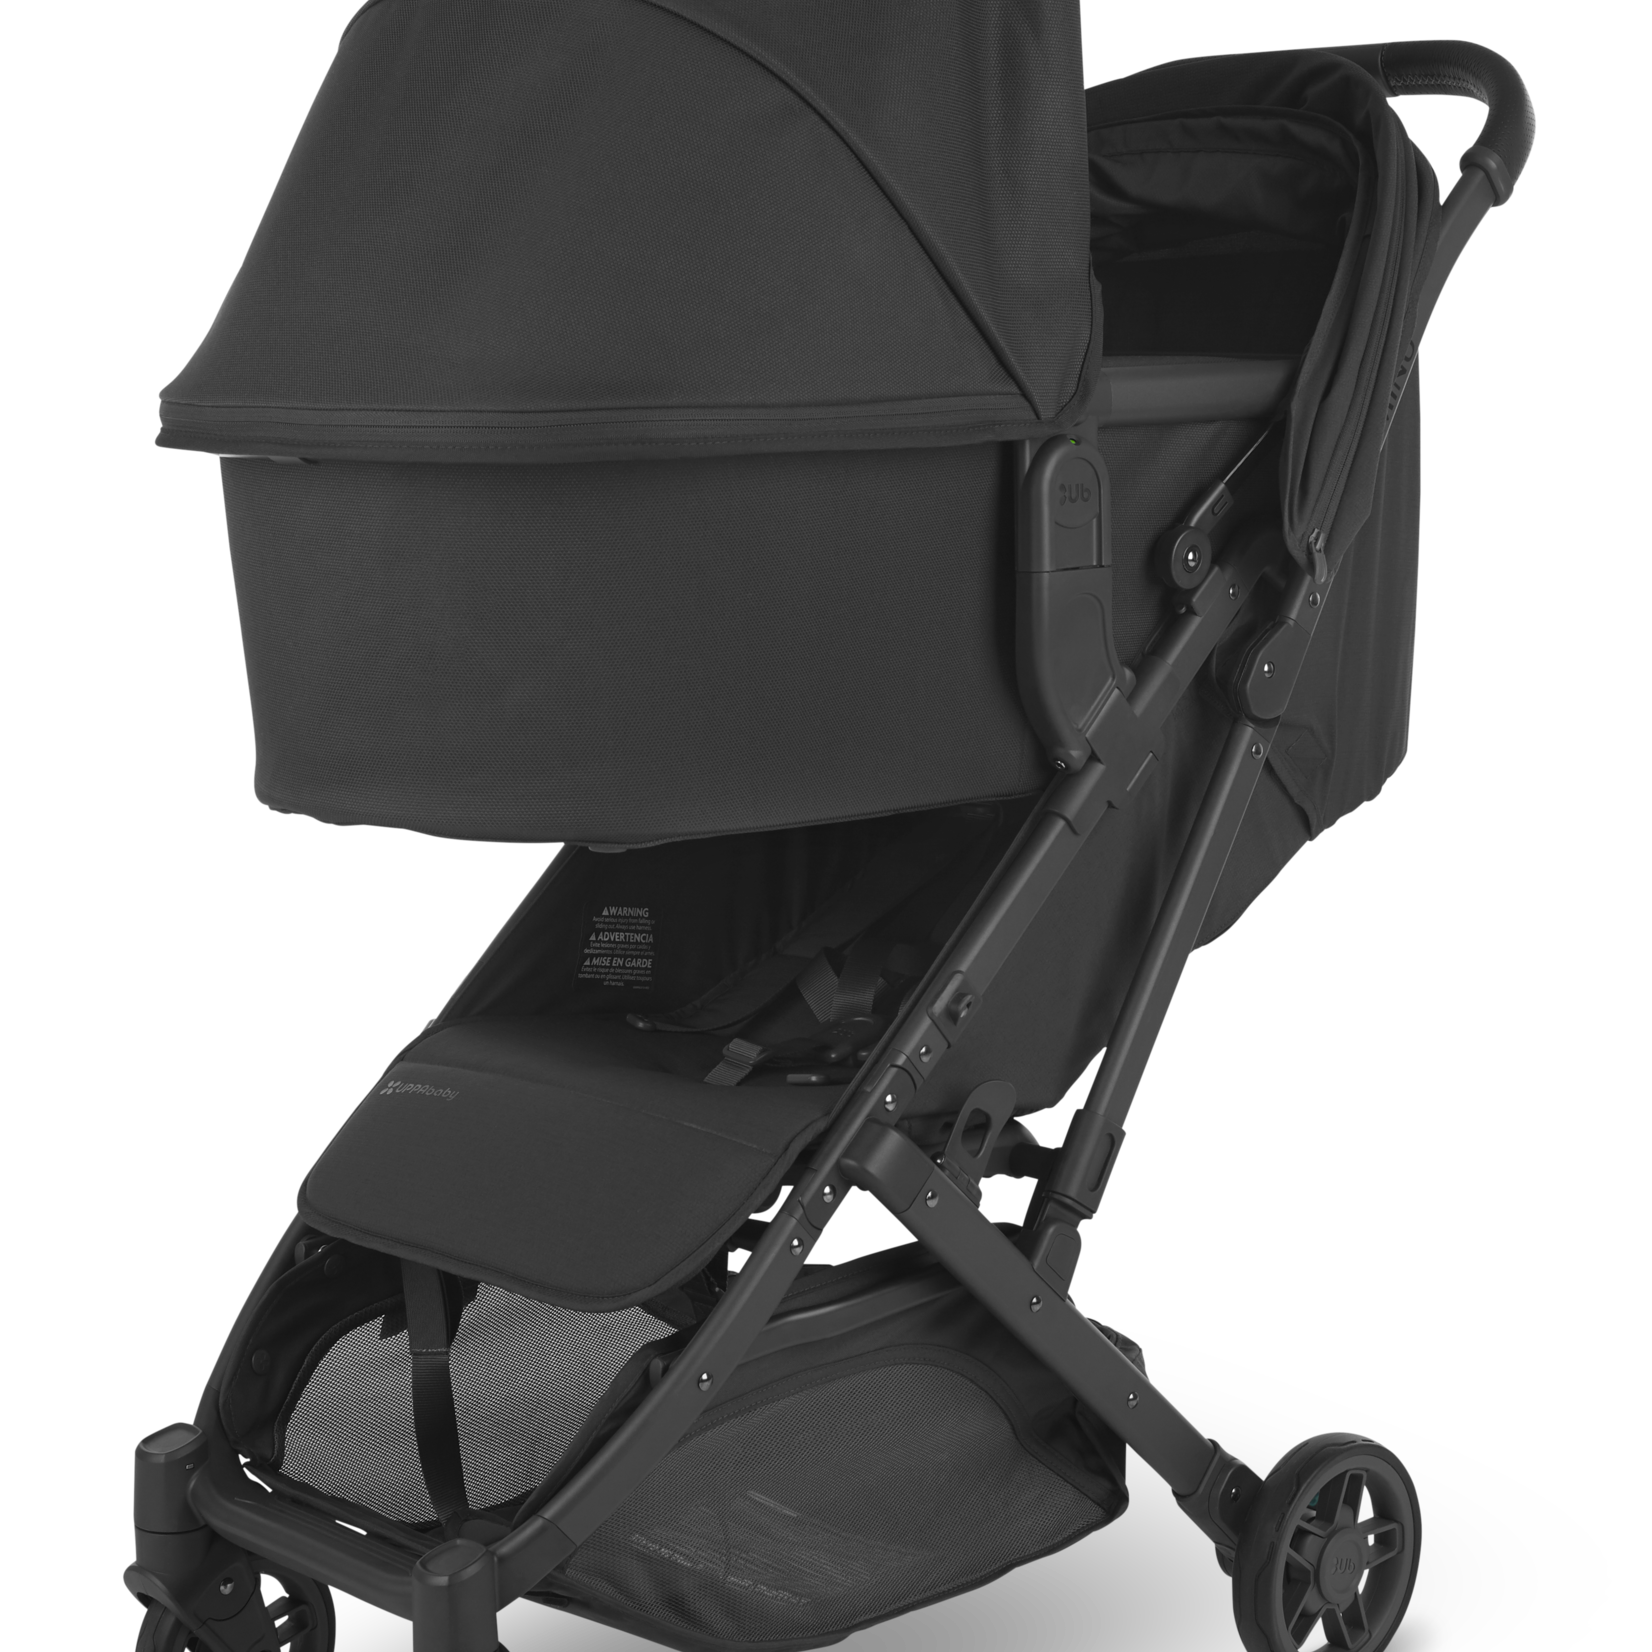 Uppababy MINU V2 Stroller - Charcoal/Carbon/Black Leather (Jake)